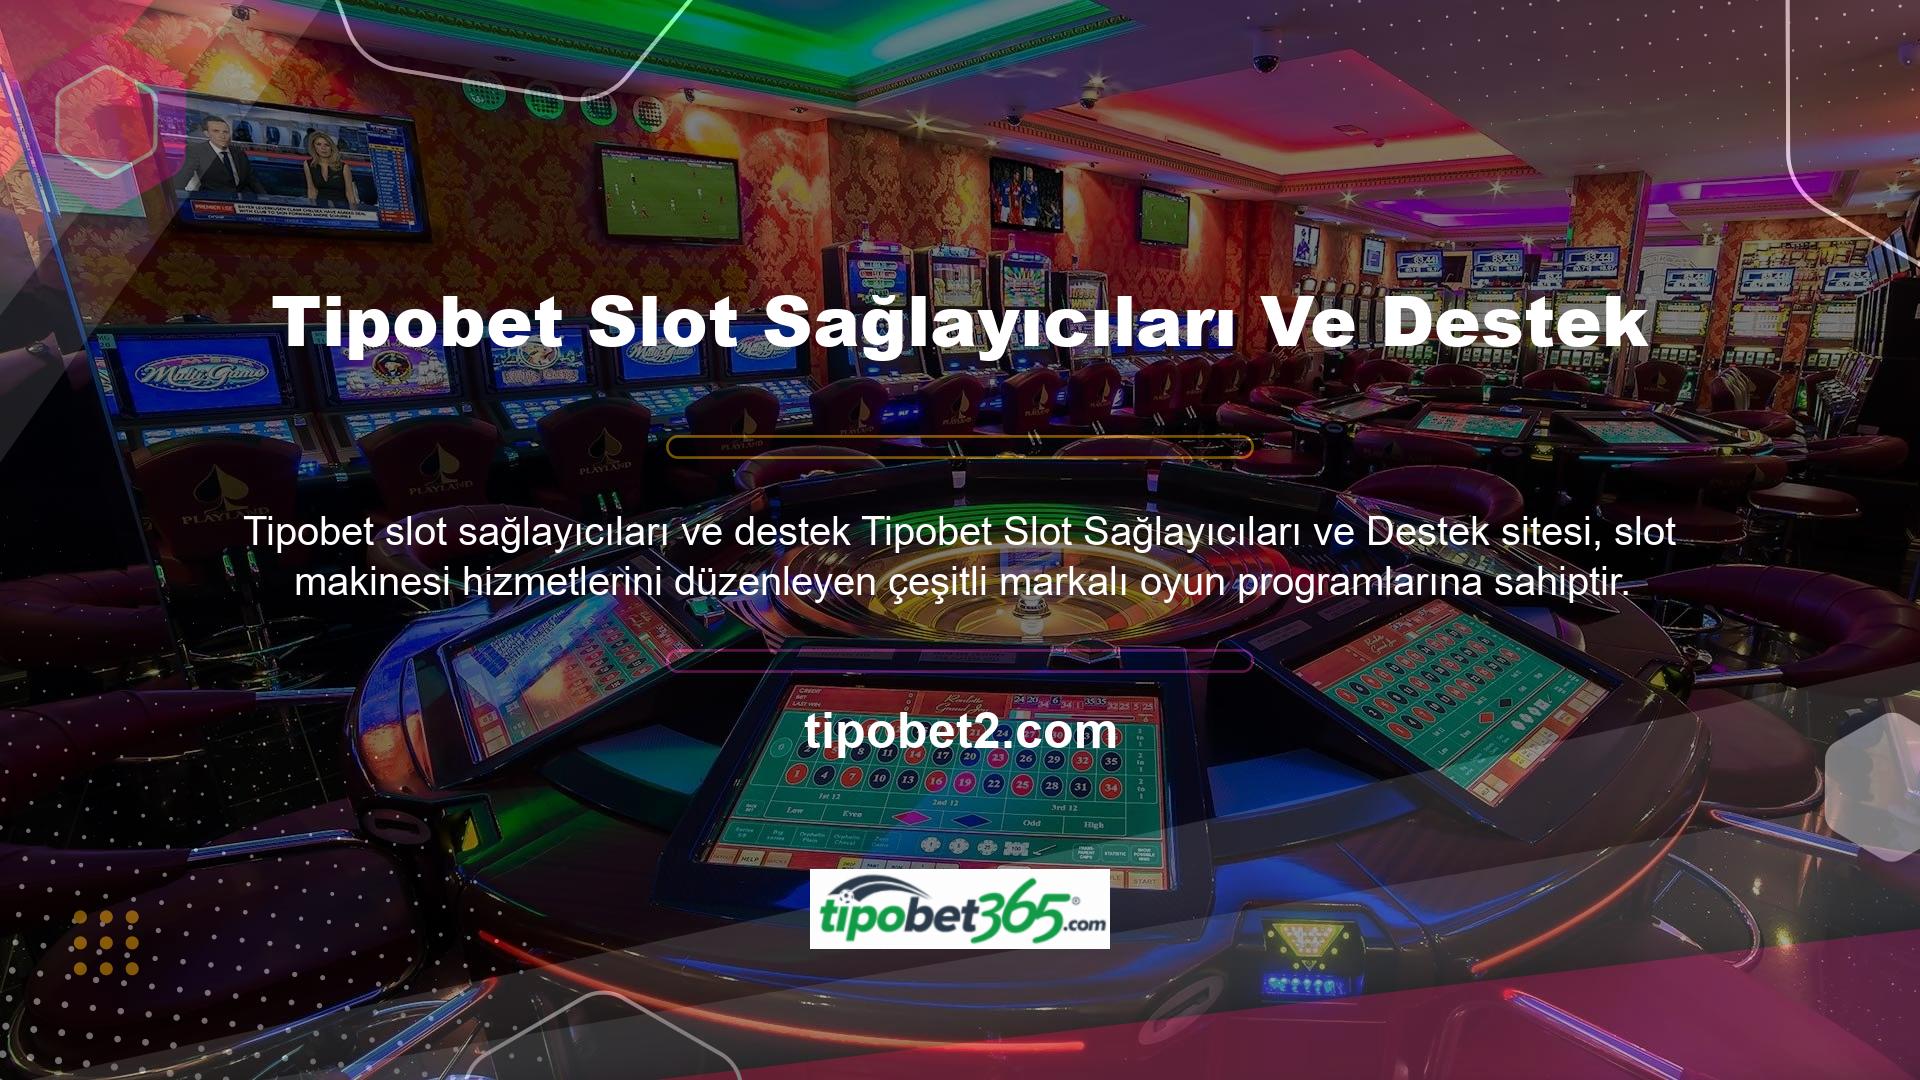 Çevrimiçi casino siteleri harika bir slot casino ortamı yaratır